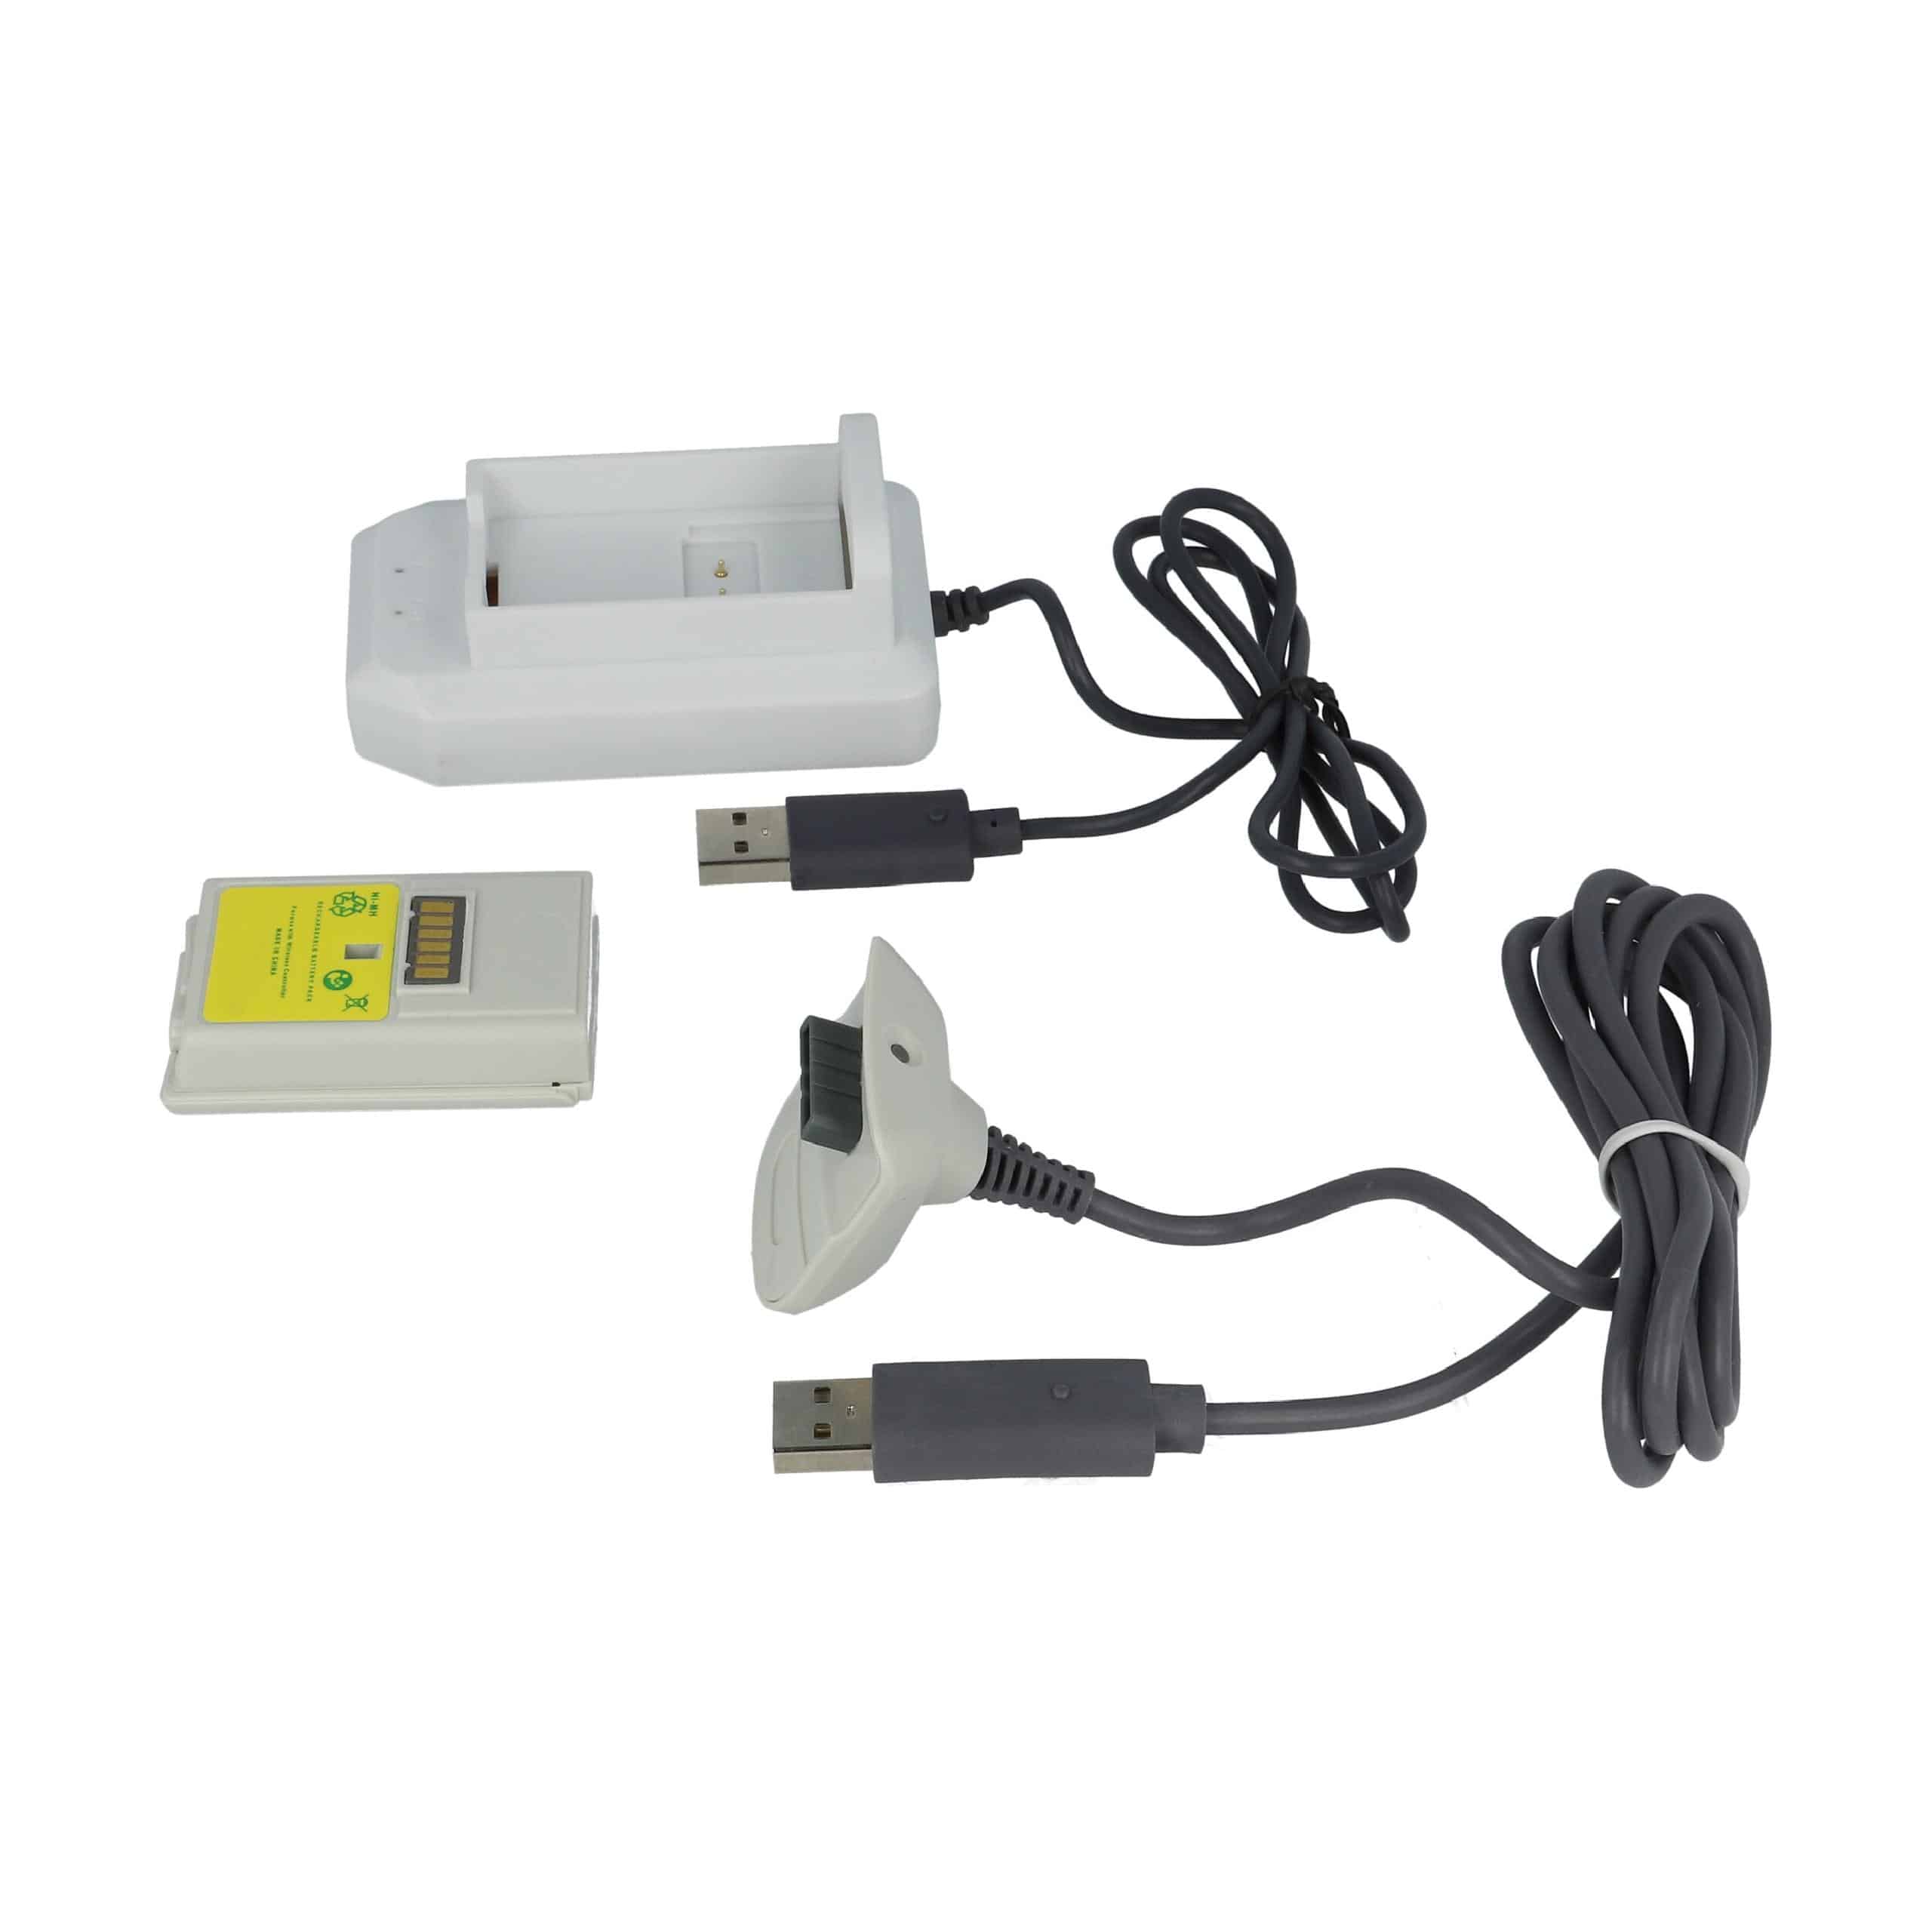 vhbw Kit Play & Charge - 1x chargeur, 1x câble d'alimentation, 1x batterie noir / blanc / gris